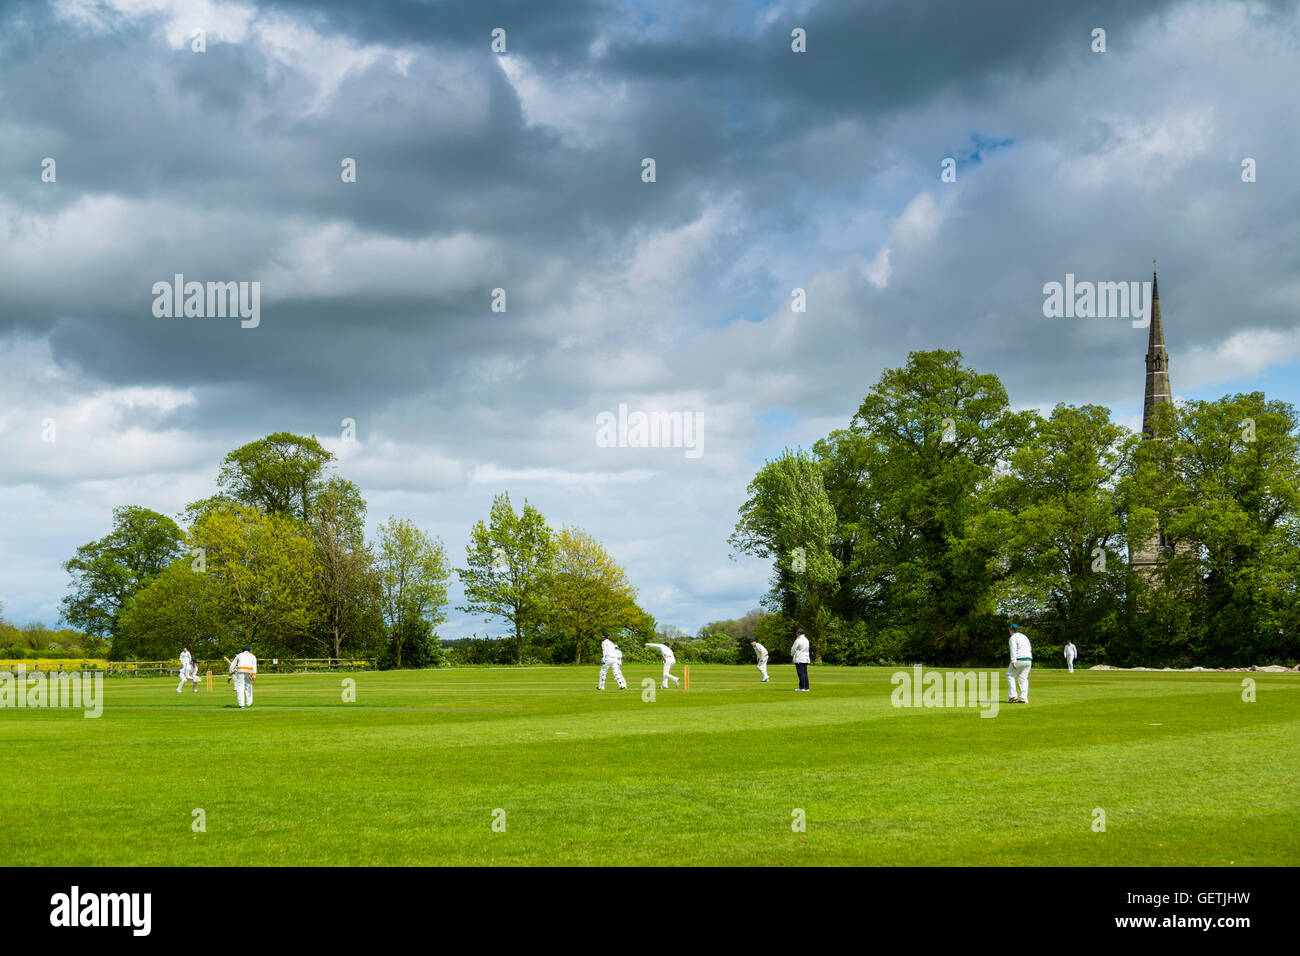 A cricket match on a village field under a stormy spring sky. Stock Photo